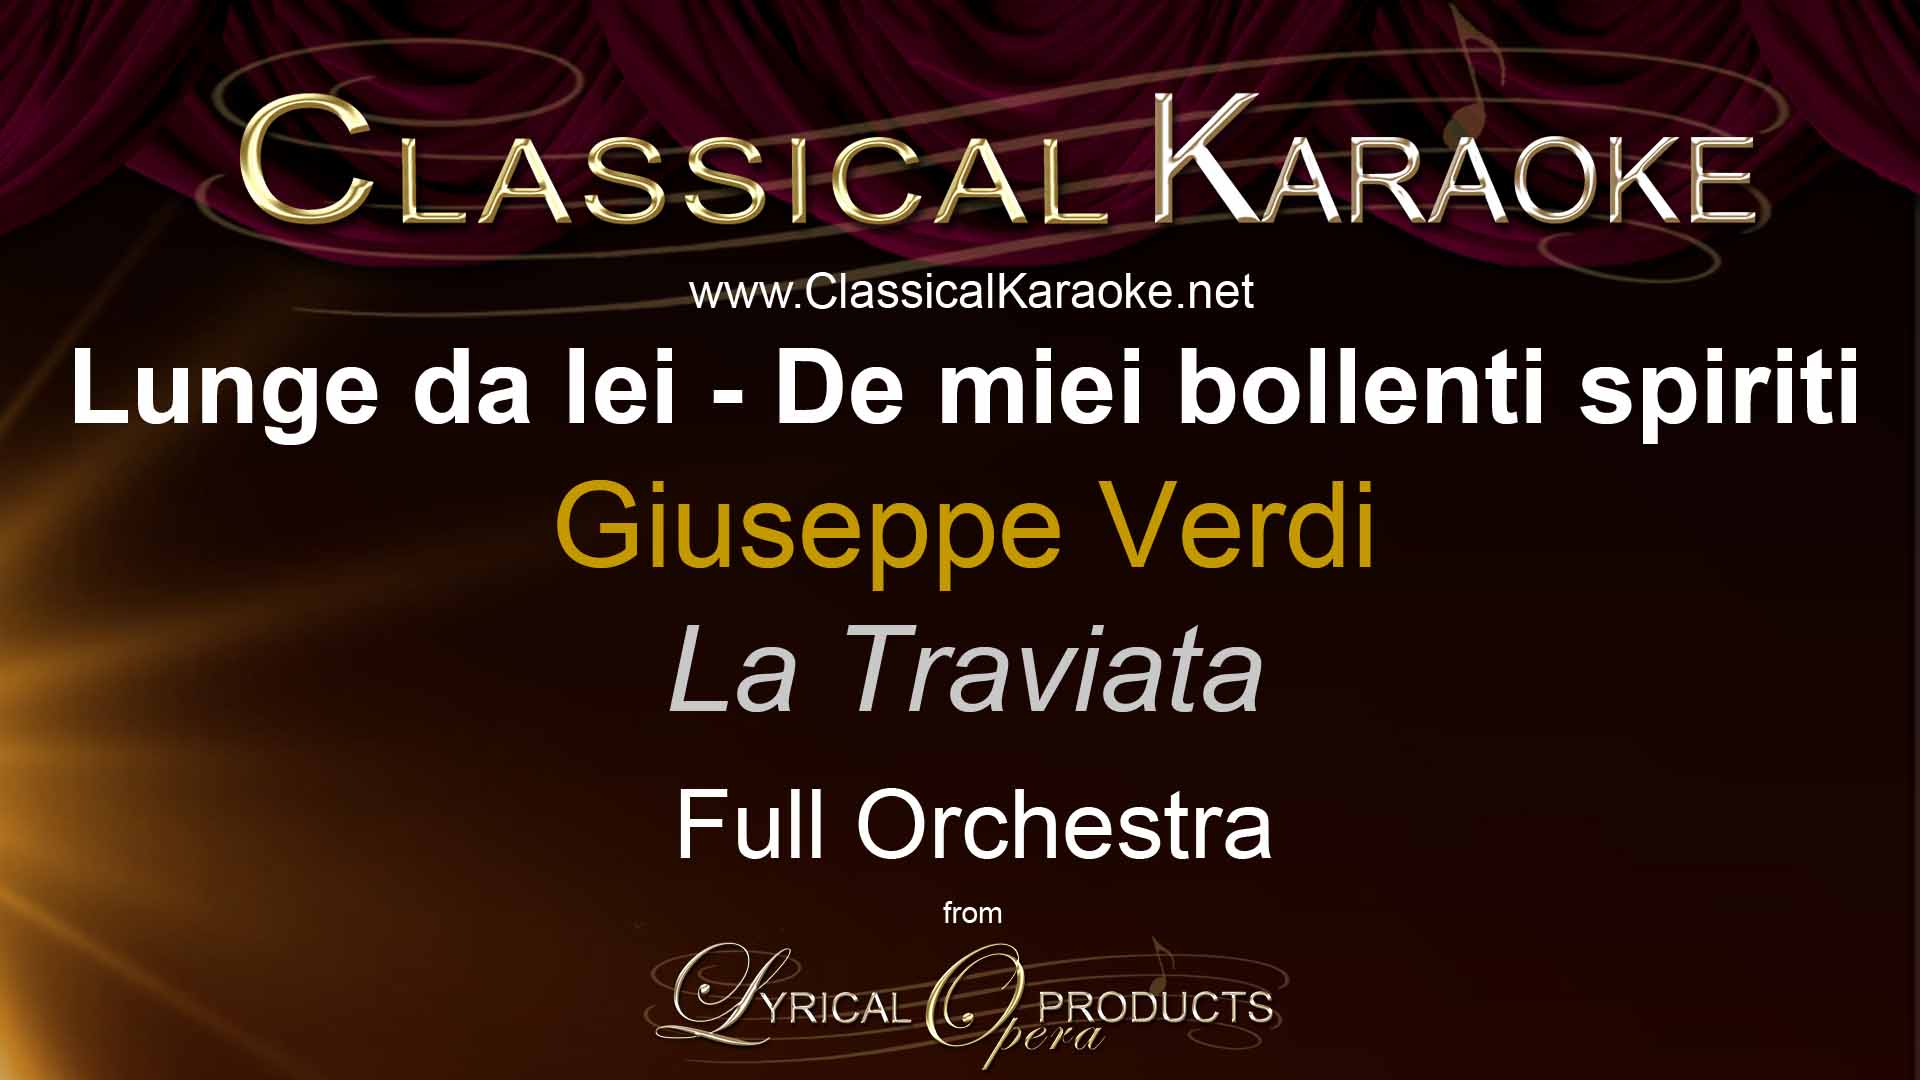 Lunge da lei - De miei bollenti spiriti, from La Traviata, Full Orchestral Accompaniment (karaoke) track